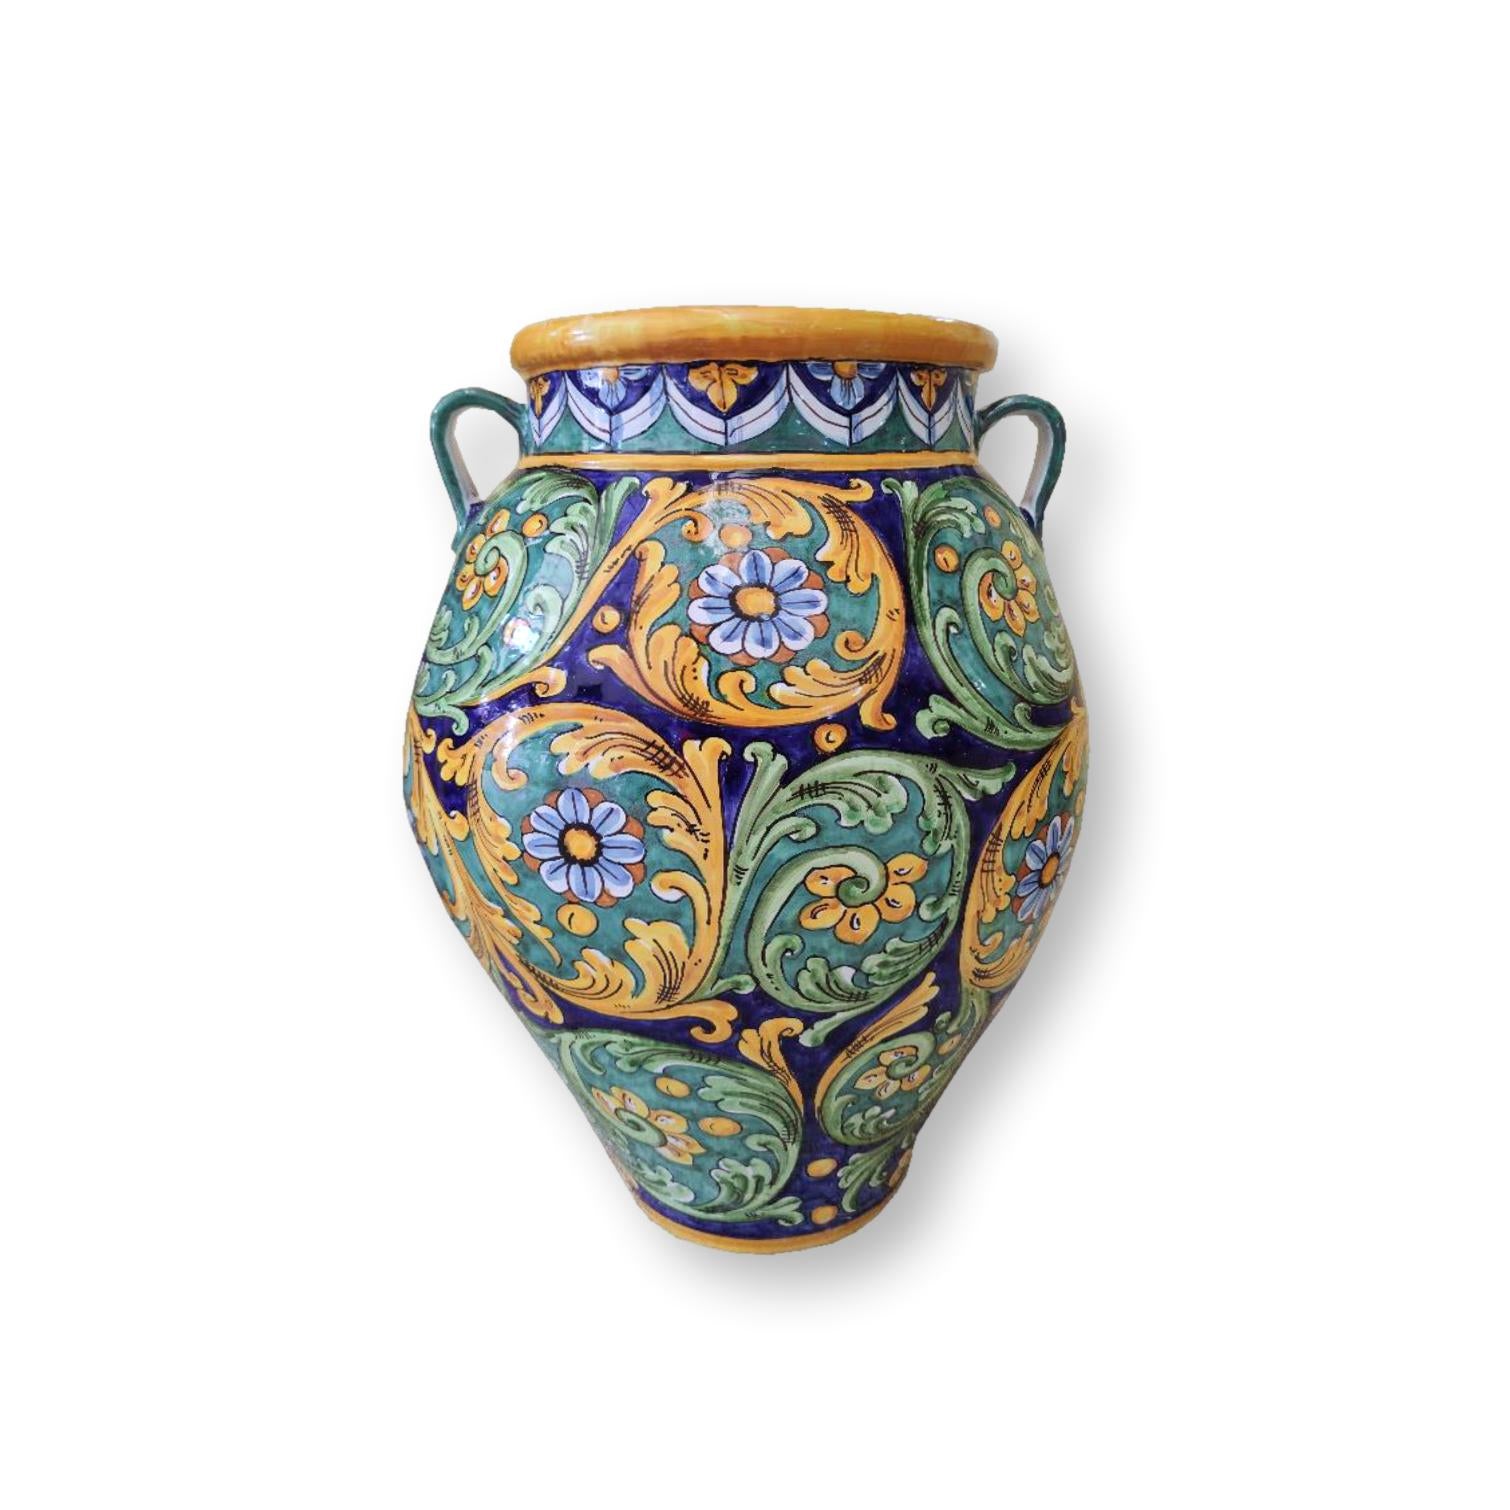 Giara in ceramica dipinta a mano - Ornata giallo, verde e blu con manici